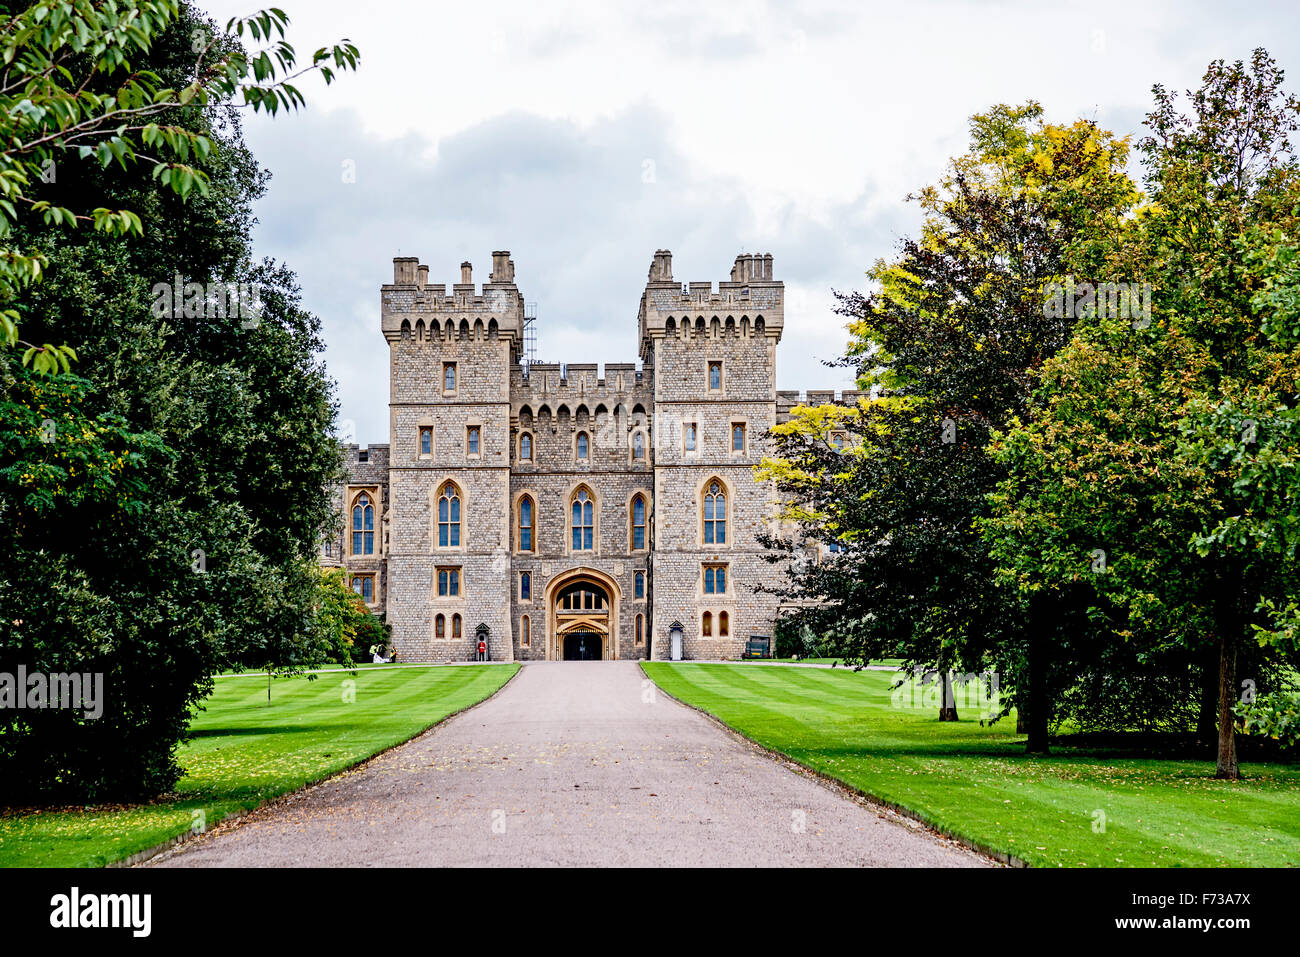 Le Château de Windsor, Berkshire, façade de l'Aile Sud, Grande Bretagne, Grossbritannien Banque D'Images